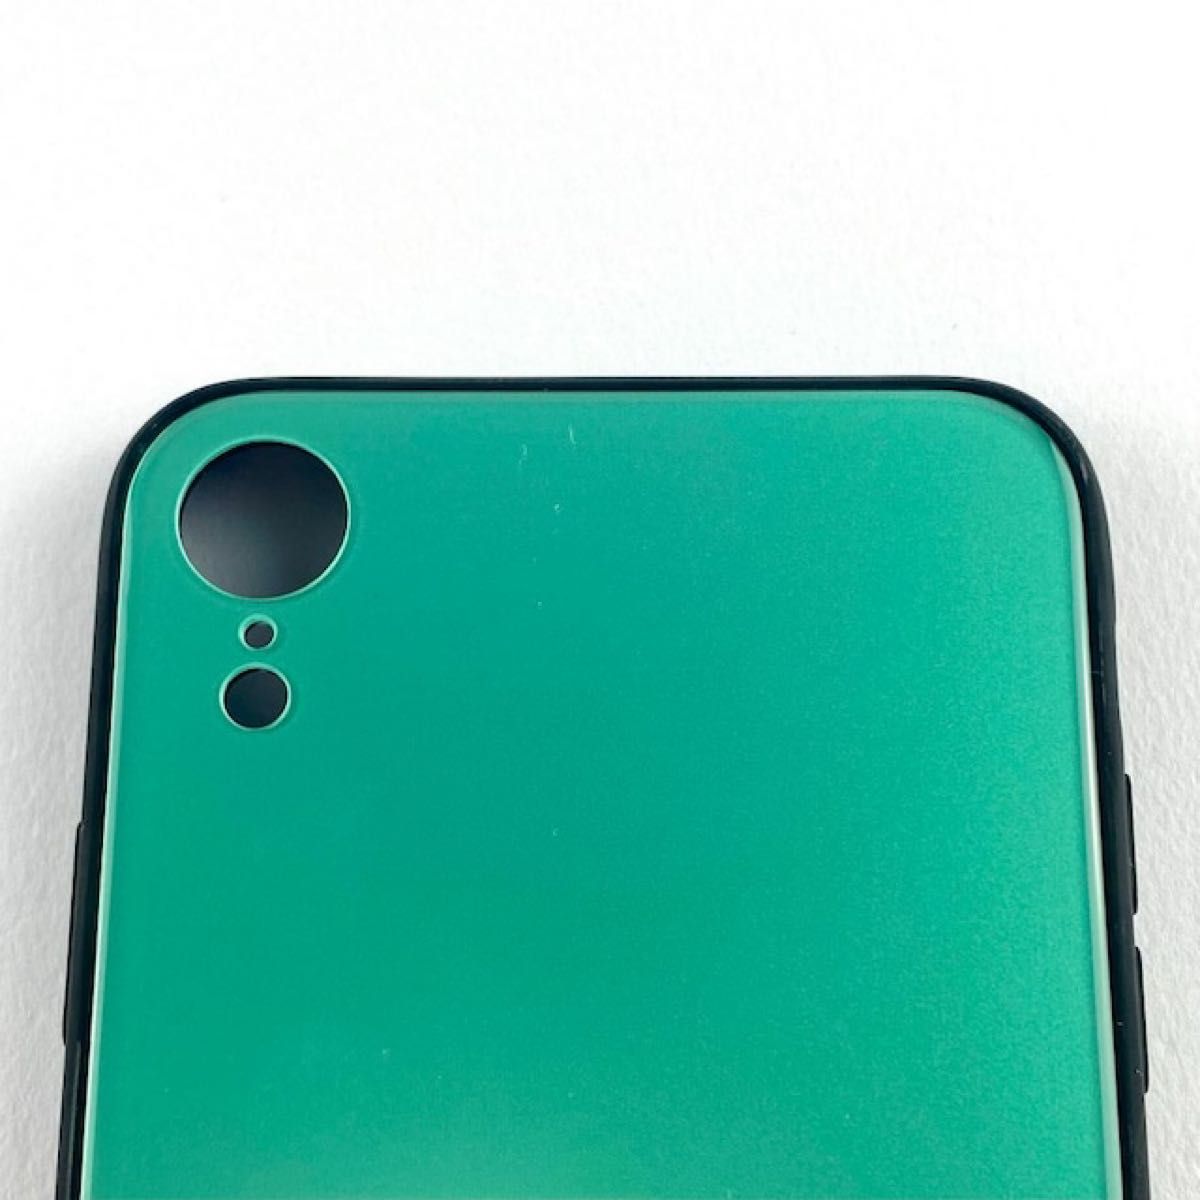 新品 iPhone XR 背面ガラスシェルケース「SHELL GLASS」 グリーン